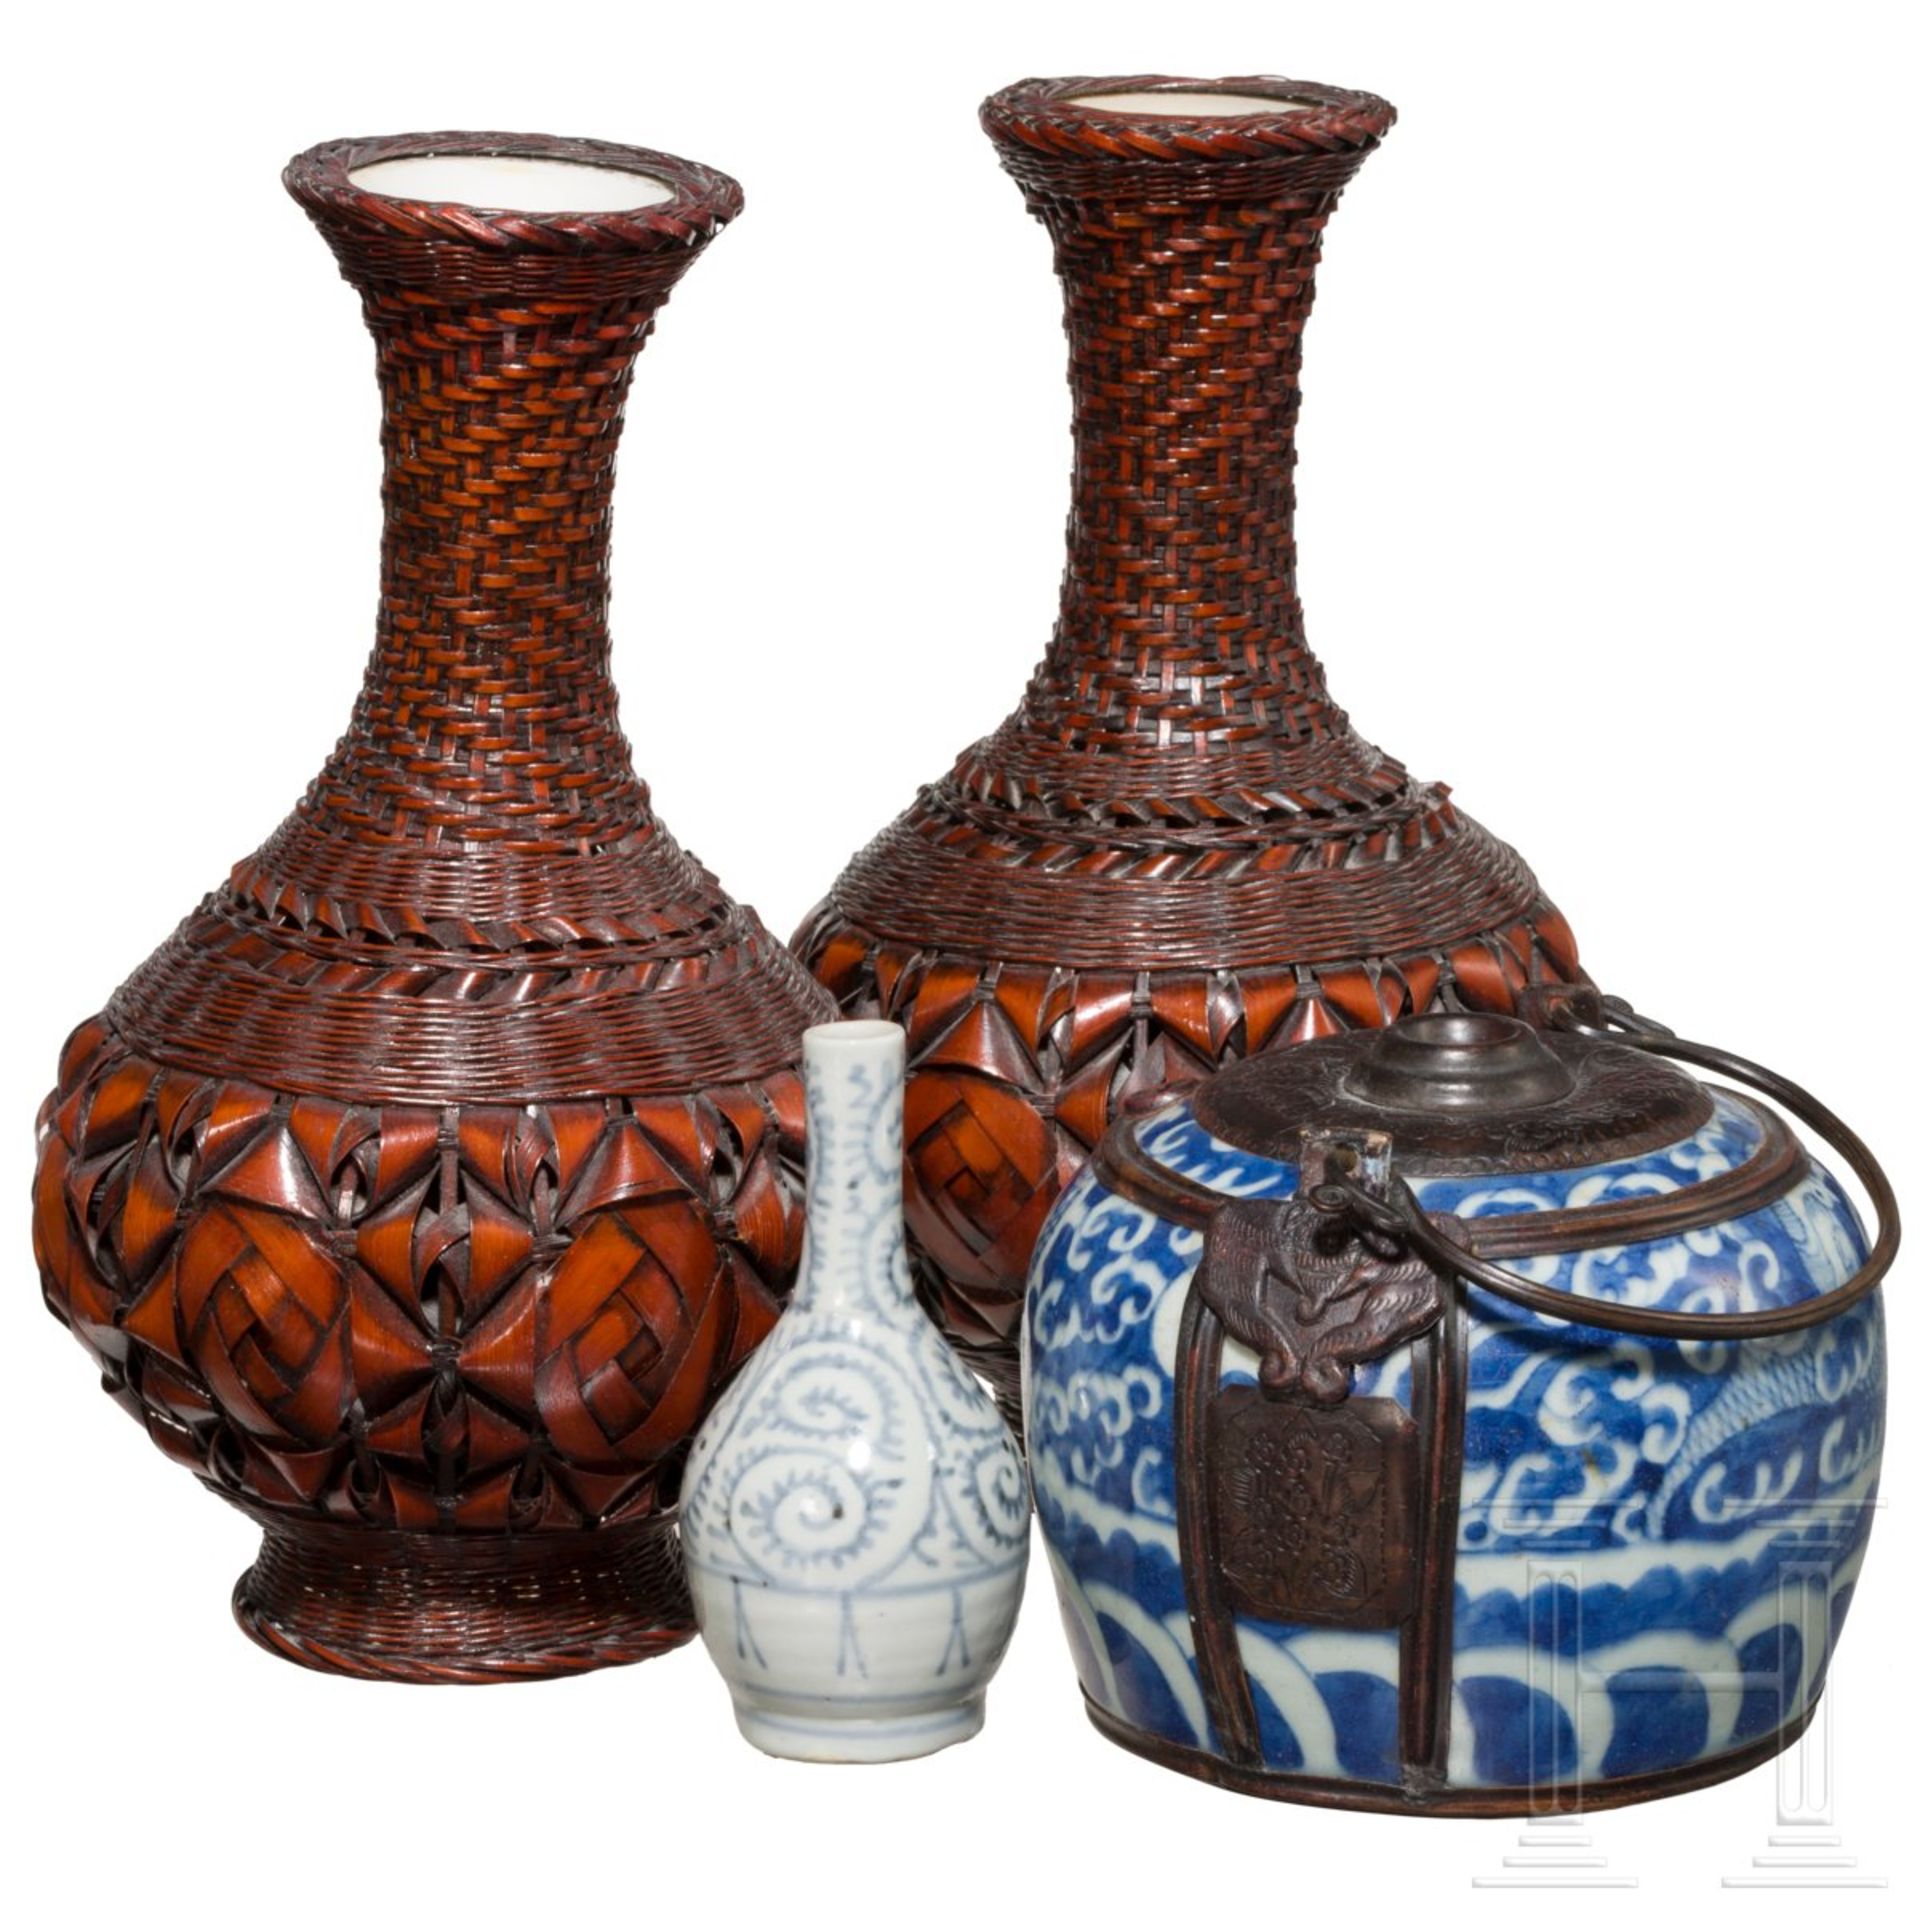 Konvolut Japan bestehend aus zwei Ikebana-Vasen, Miniaturvase und Henkeltopf, Japan, 19. Jhdt - Image 2 of 4